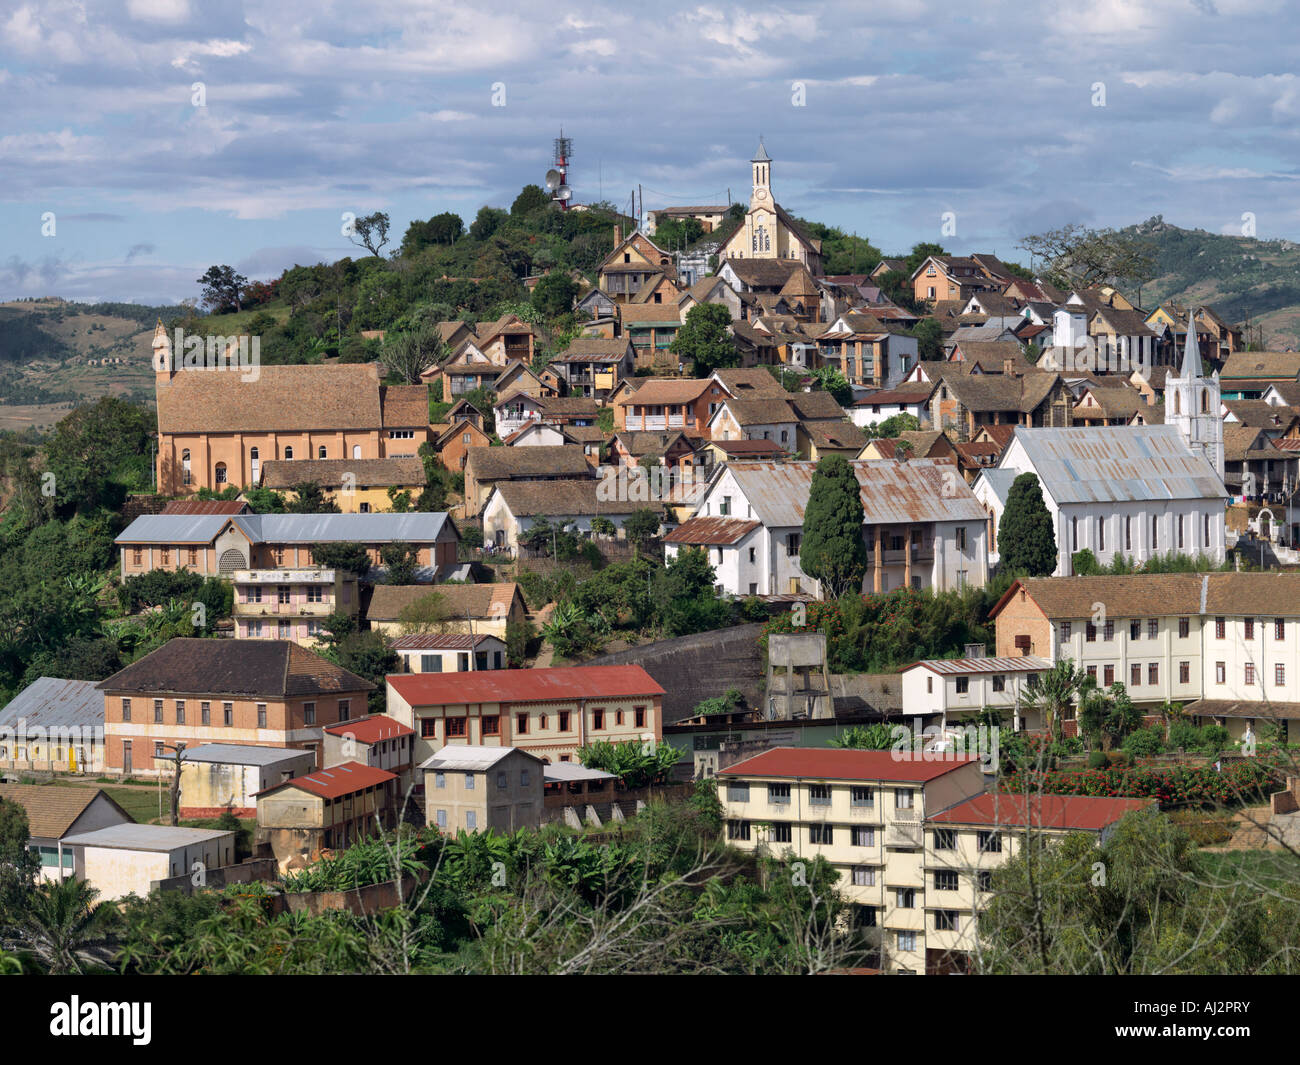 La vecchia città alta di Fianarantsoa con la sua pletora di chiese fu fondata nel 1830 come la capitale amministrativa Foto Stock